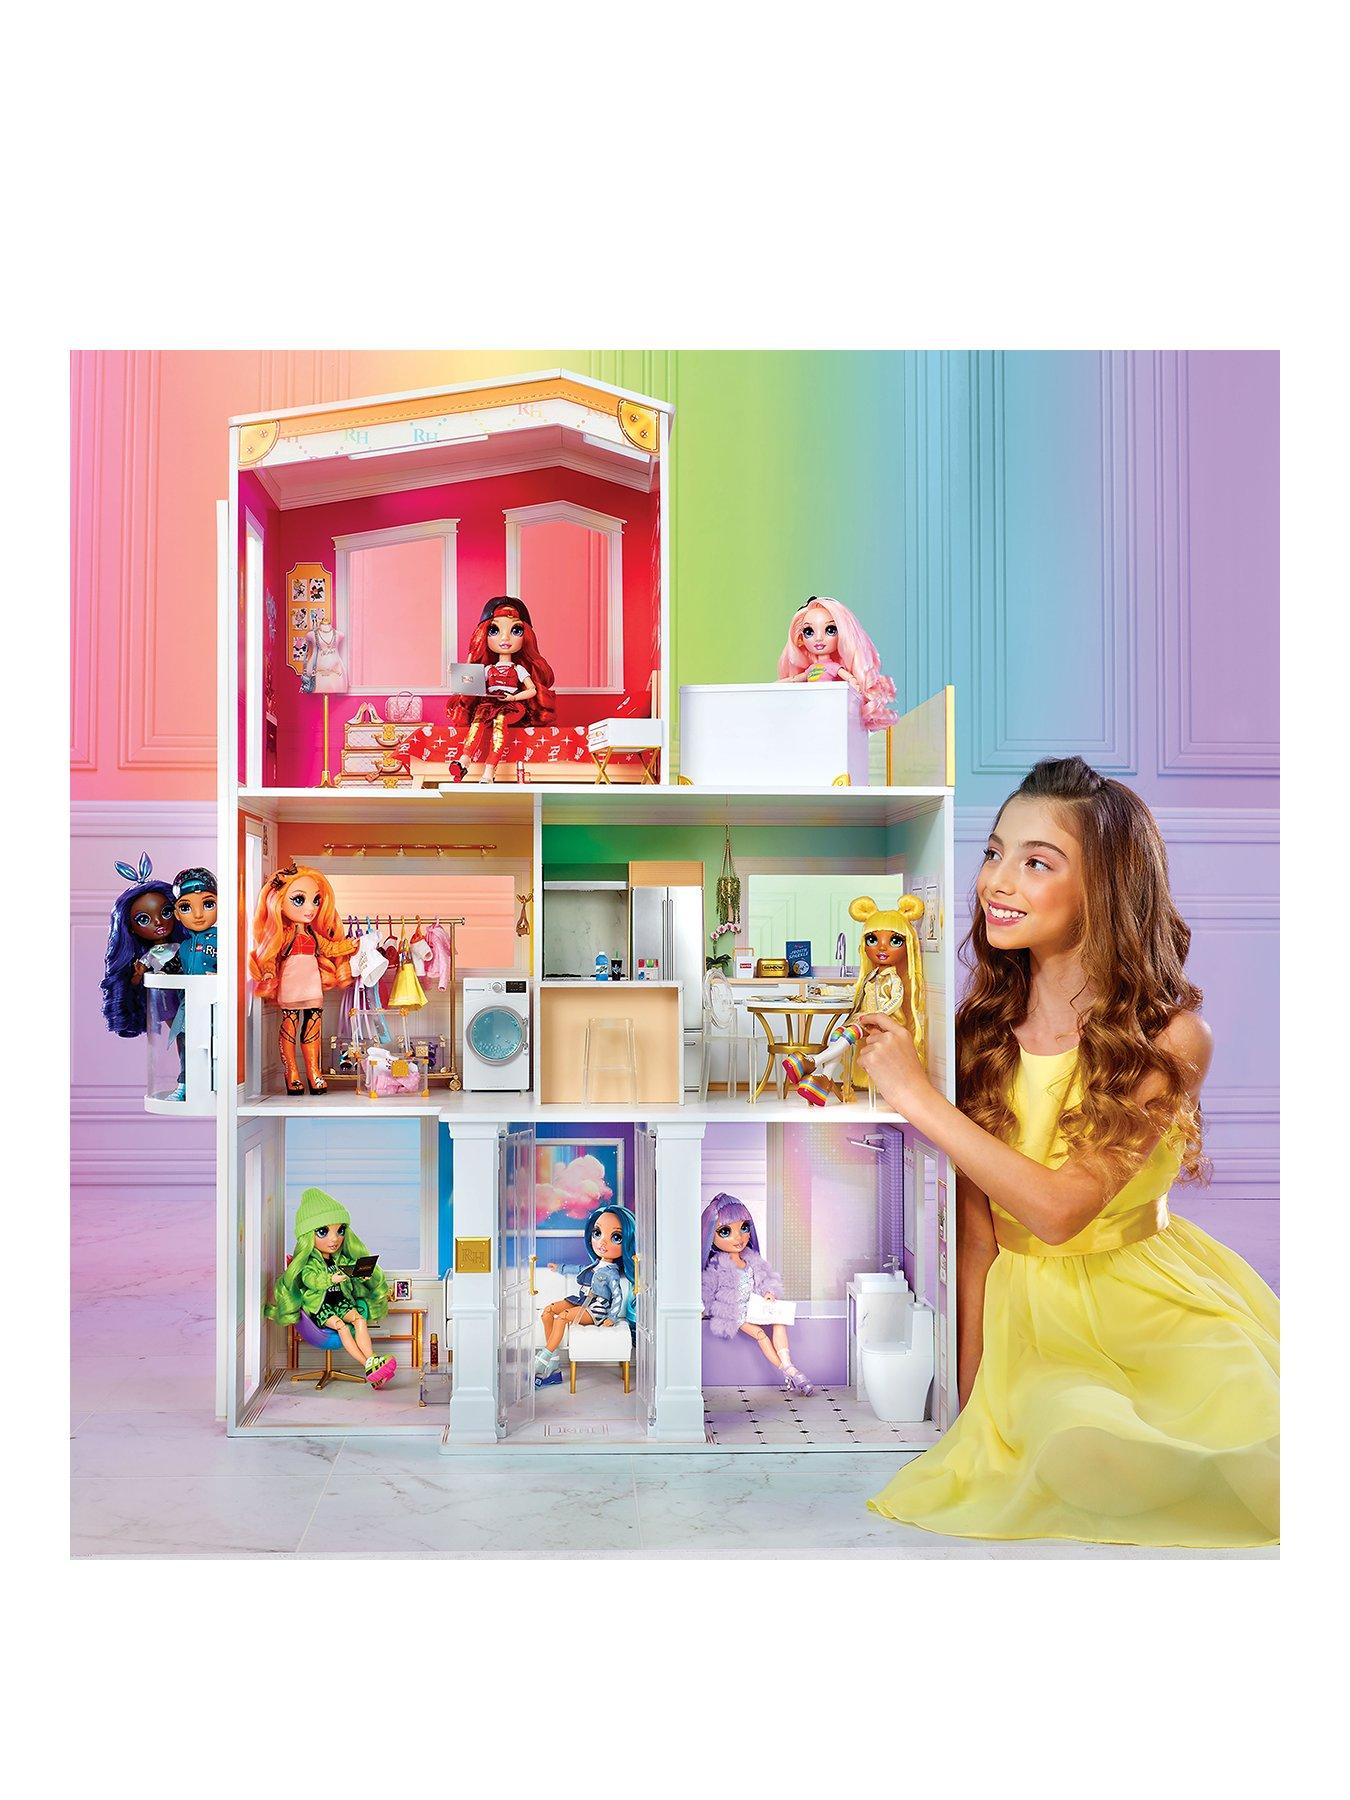  Rainbow High House – 3-Story Wood Doll House (4-Ft